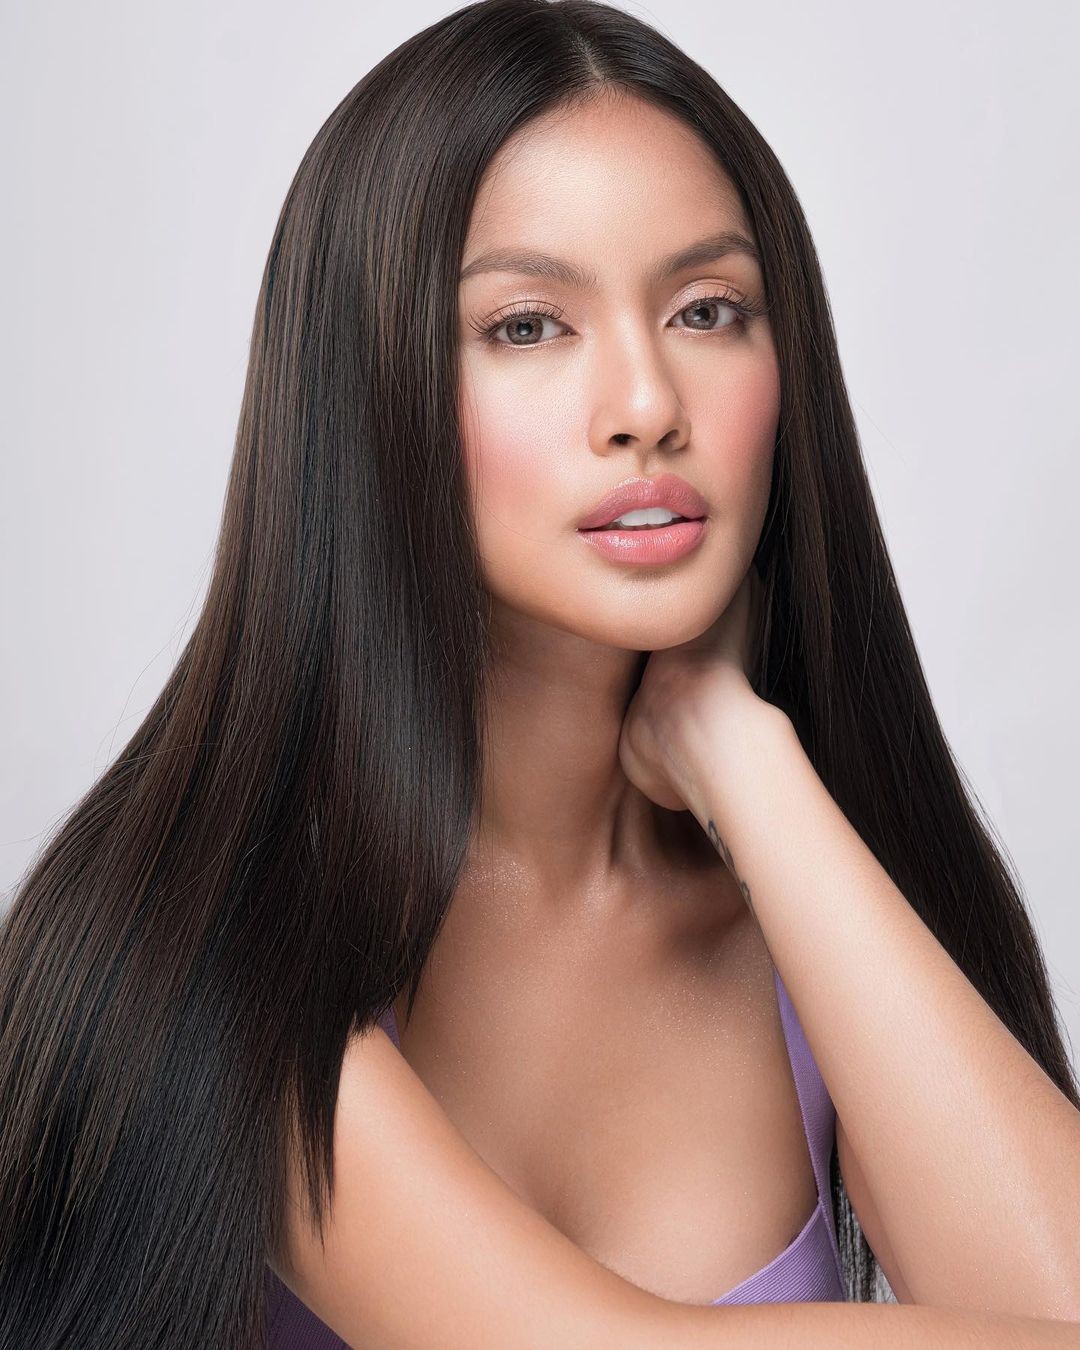 Nhan sắc ngọt ngào của tân Hoa hậu chuyển giới Philippines - Ảnh 7.